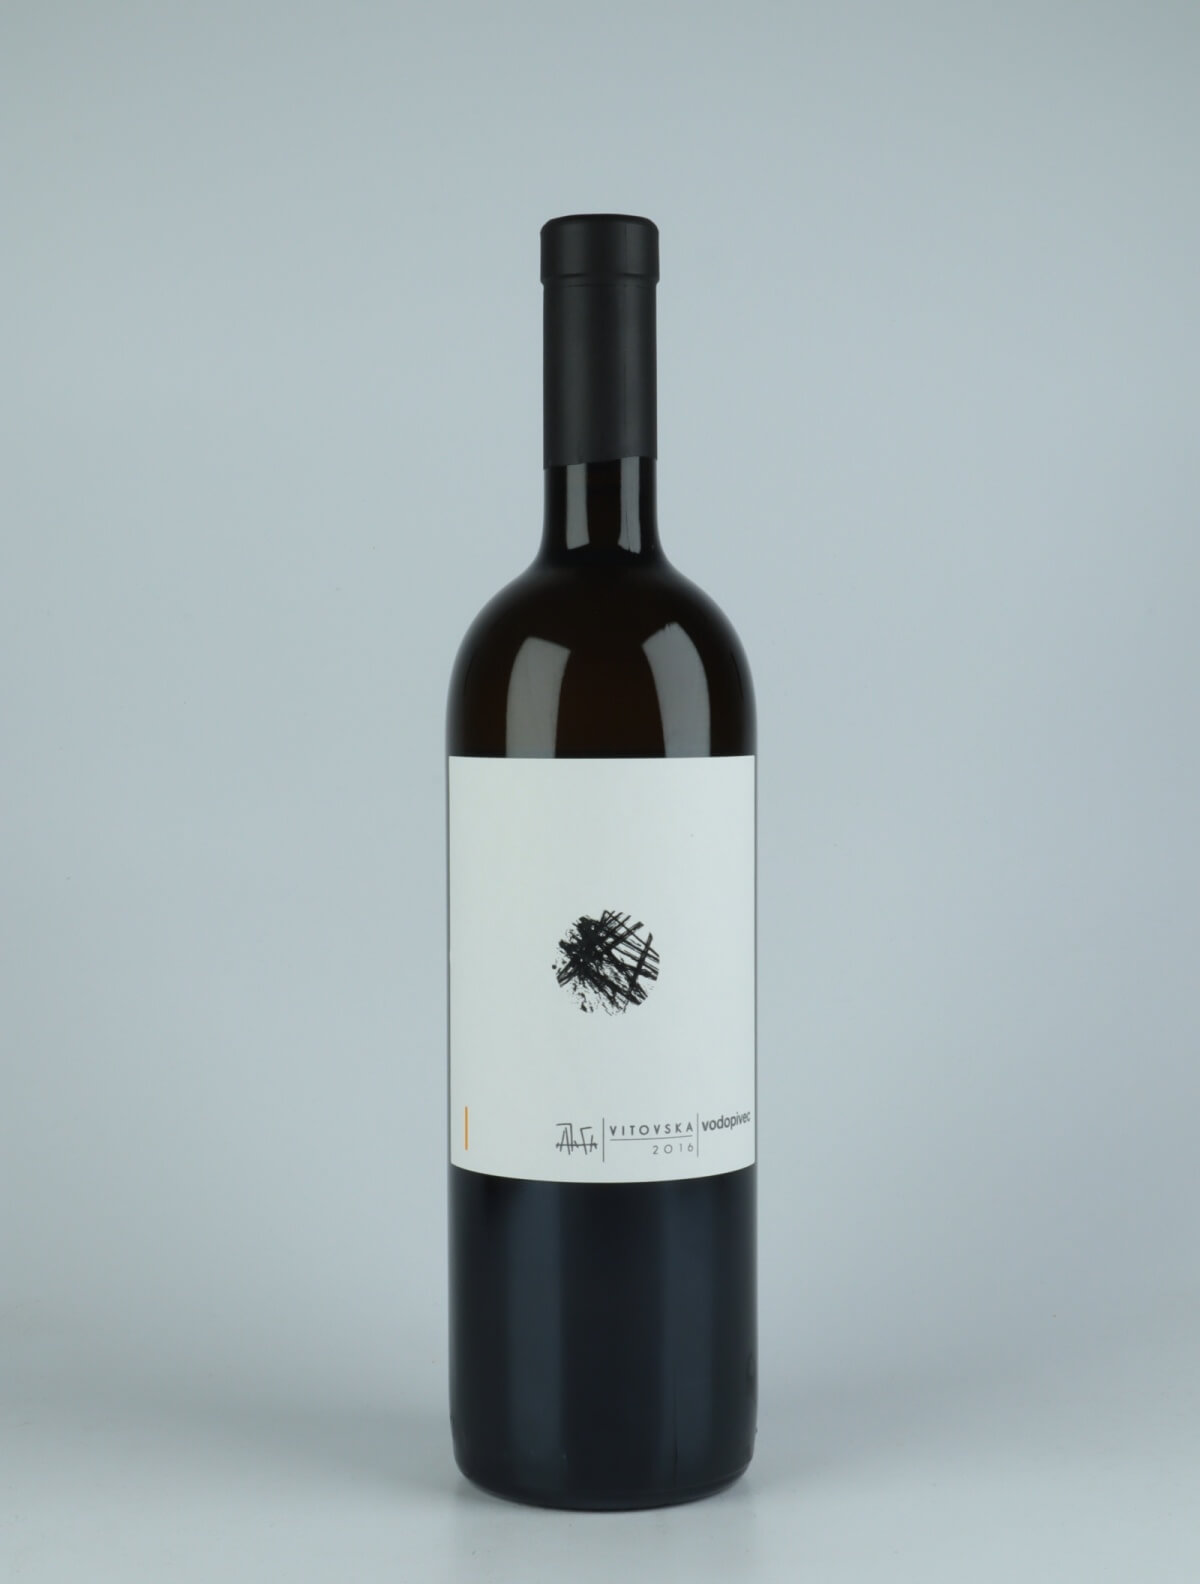 A bottle 2016 Vitovska Orange wine from Paolo Vodopivec, Friuli in Italy